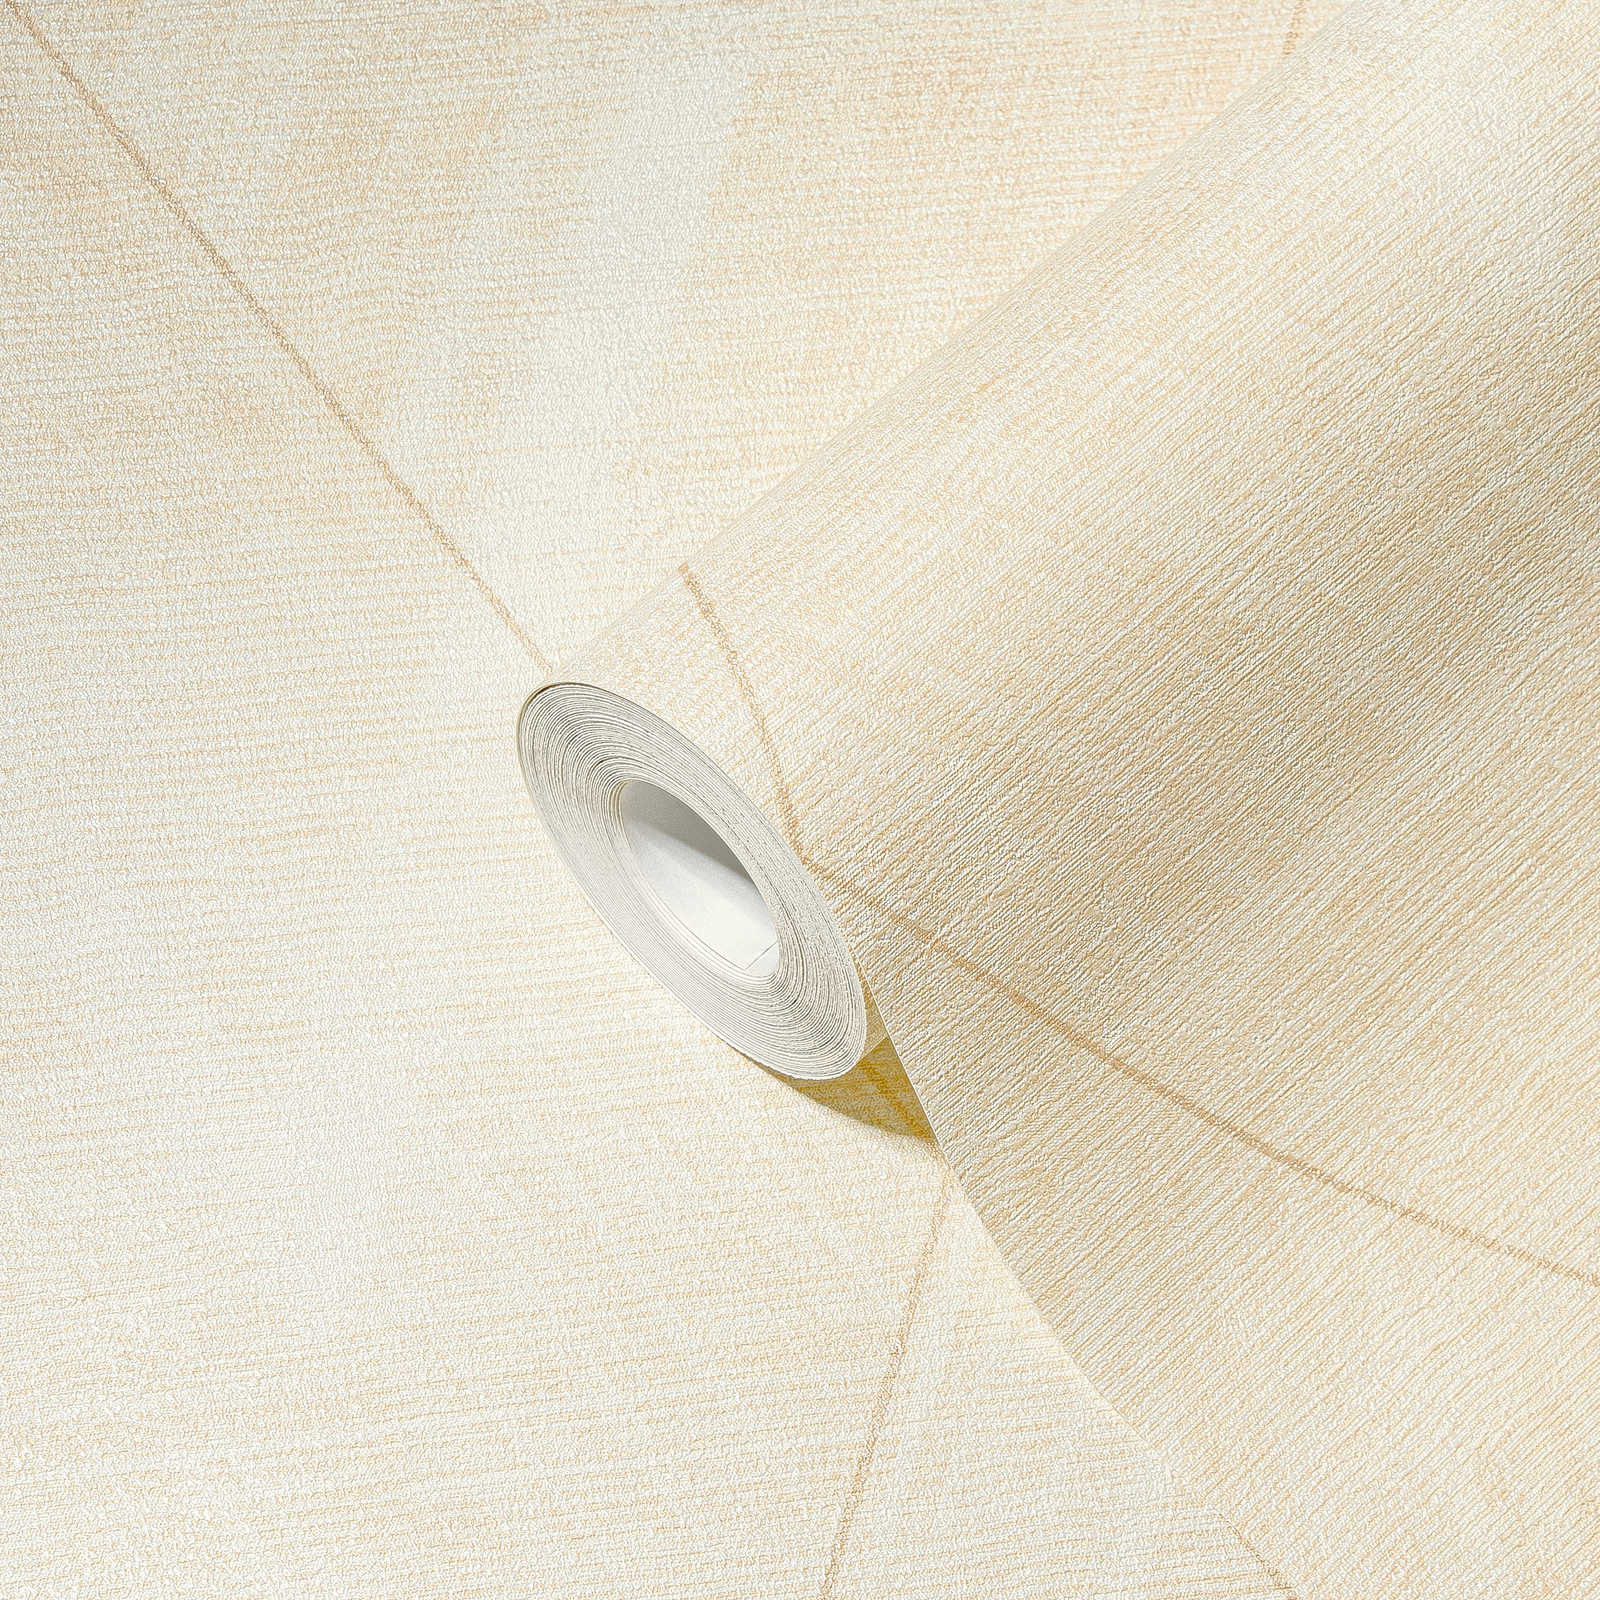             Carta da parati diamantata con ottica tessile - metallizzata, crema, gialla
        